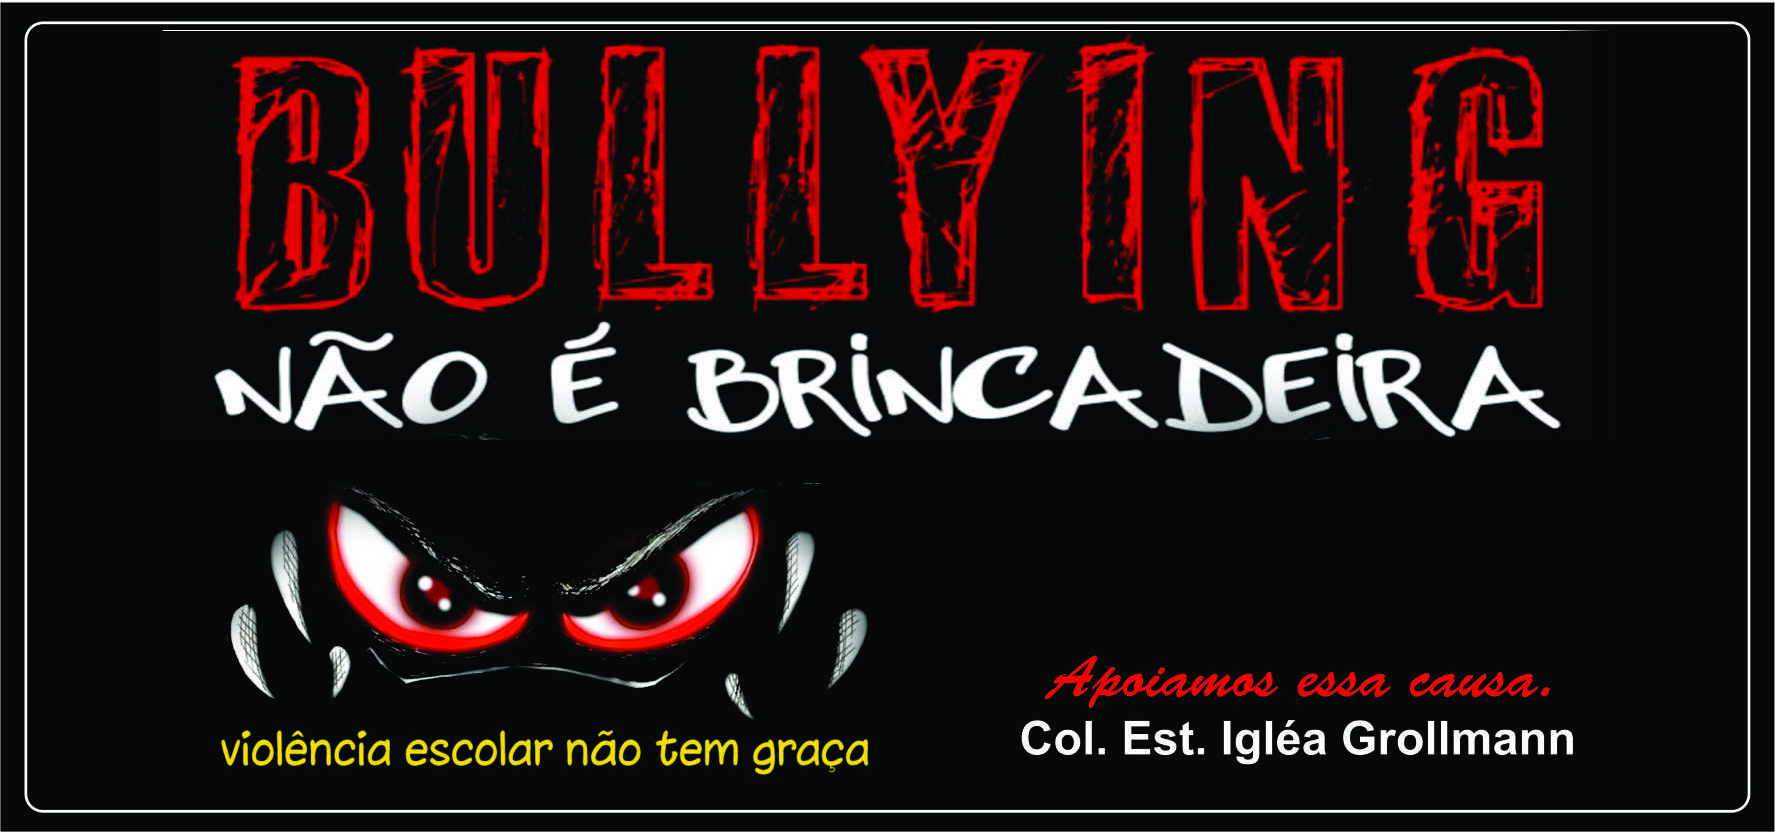 BULLYING É CRIME!!! : r/oOitavoB